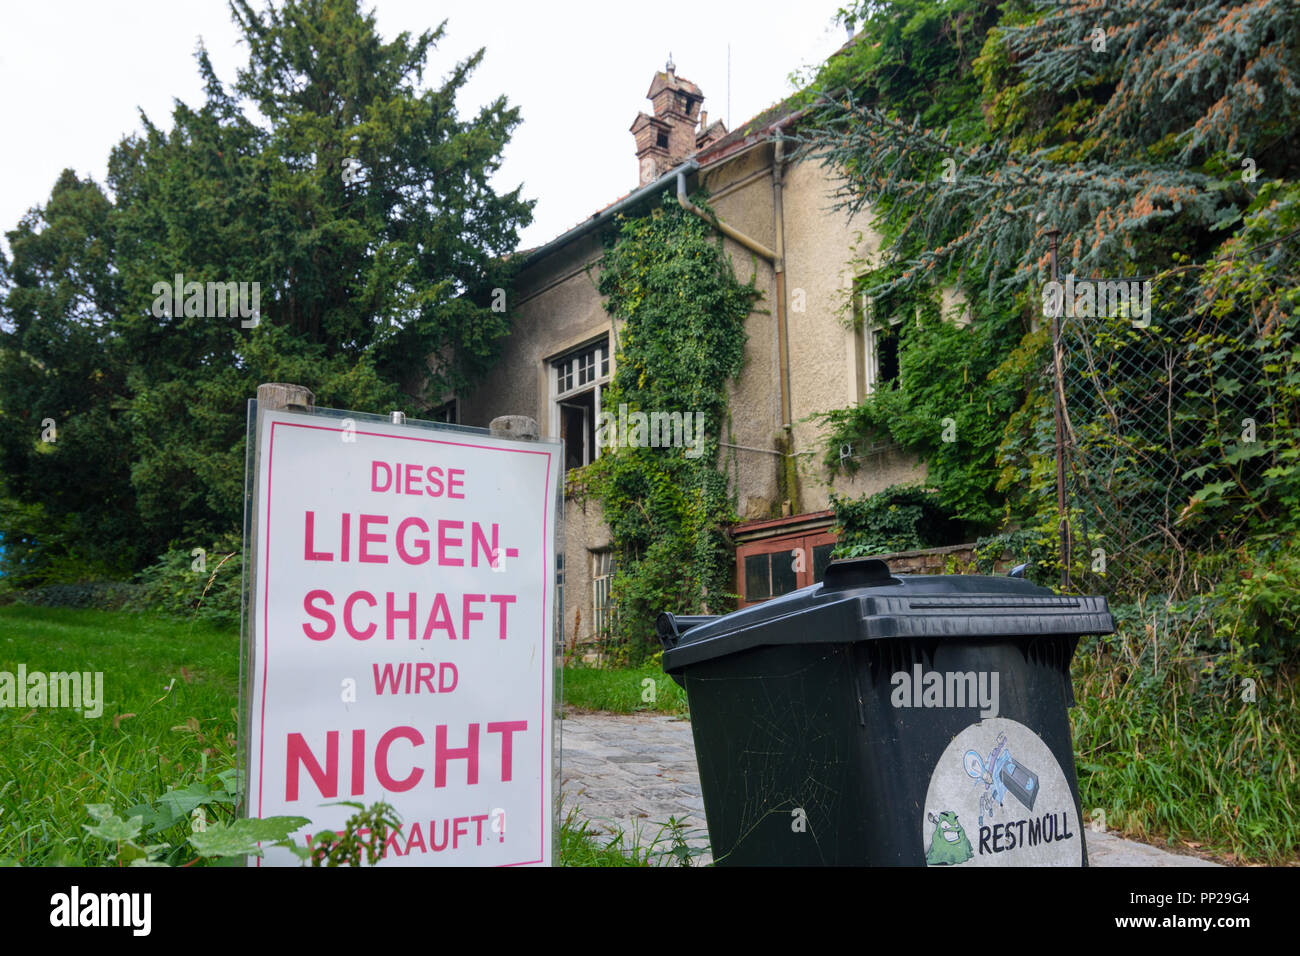 Wien, Vienna: segno 'Diese Liegenschaft wird nicht verkauft', eseguire down house Neustift am Walde, 19. Döbling, Wien, Austria Foto Stock